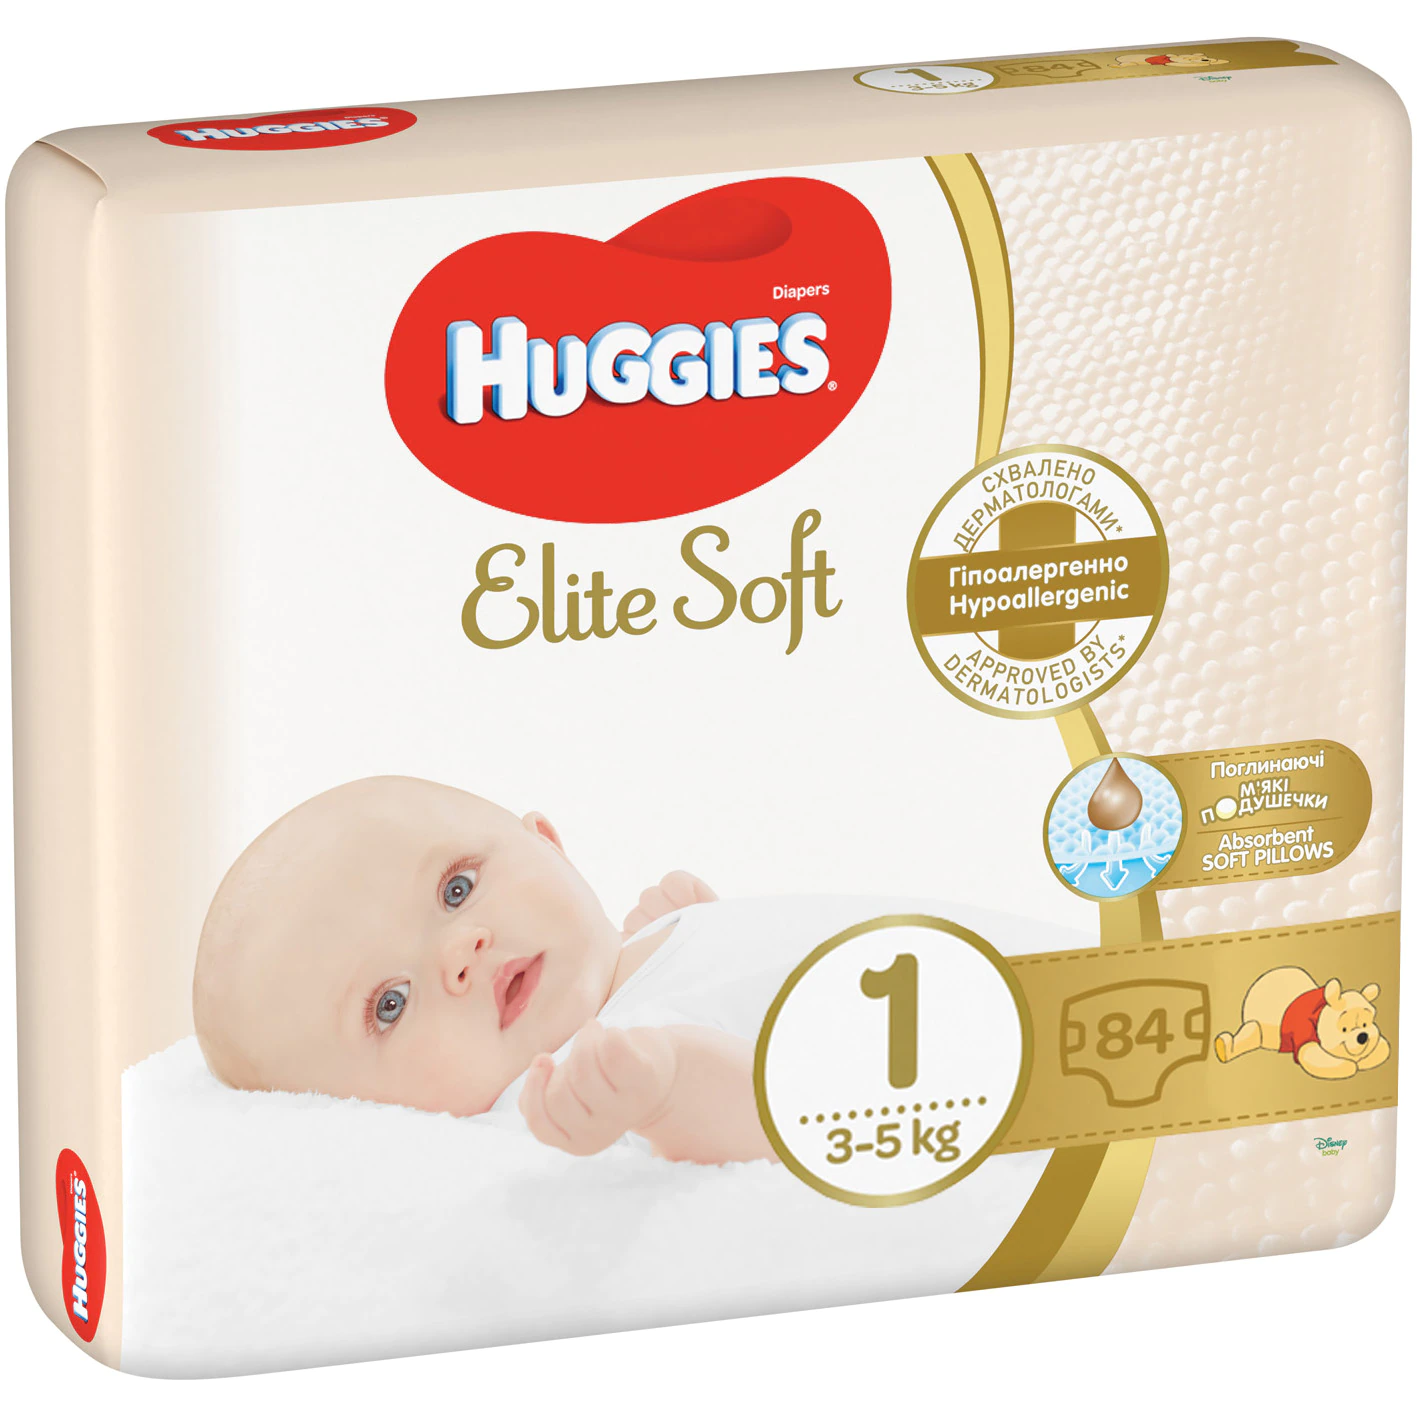 Scutece Elite Soft 1, 3-5kg, 84 bucati, Huggies